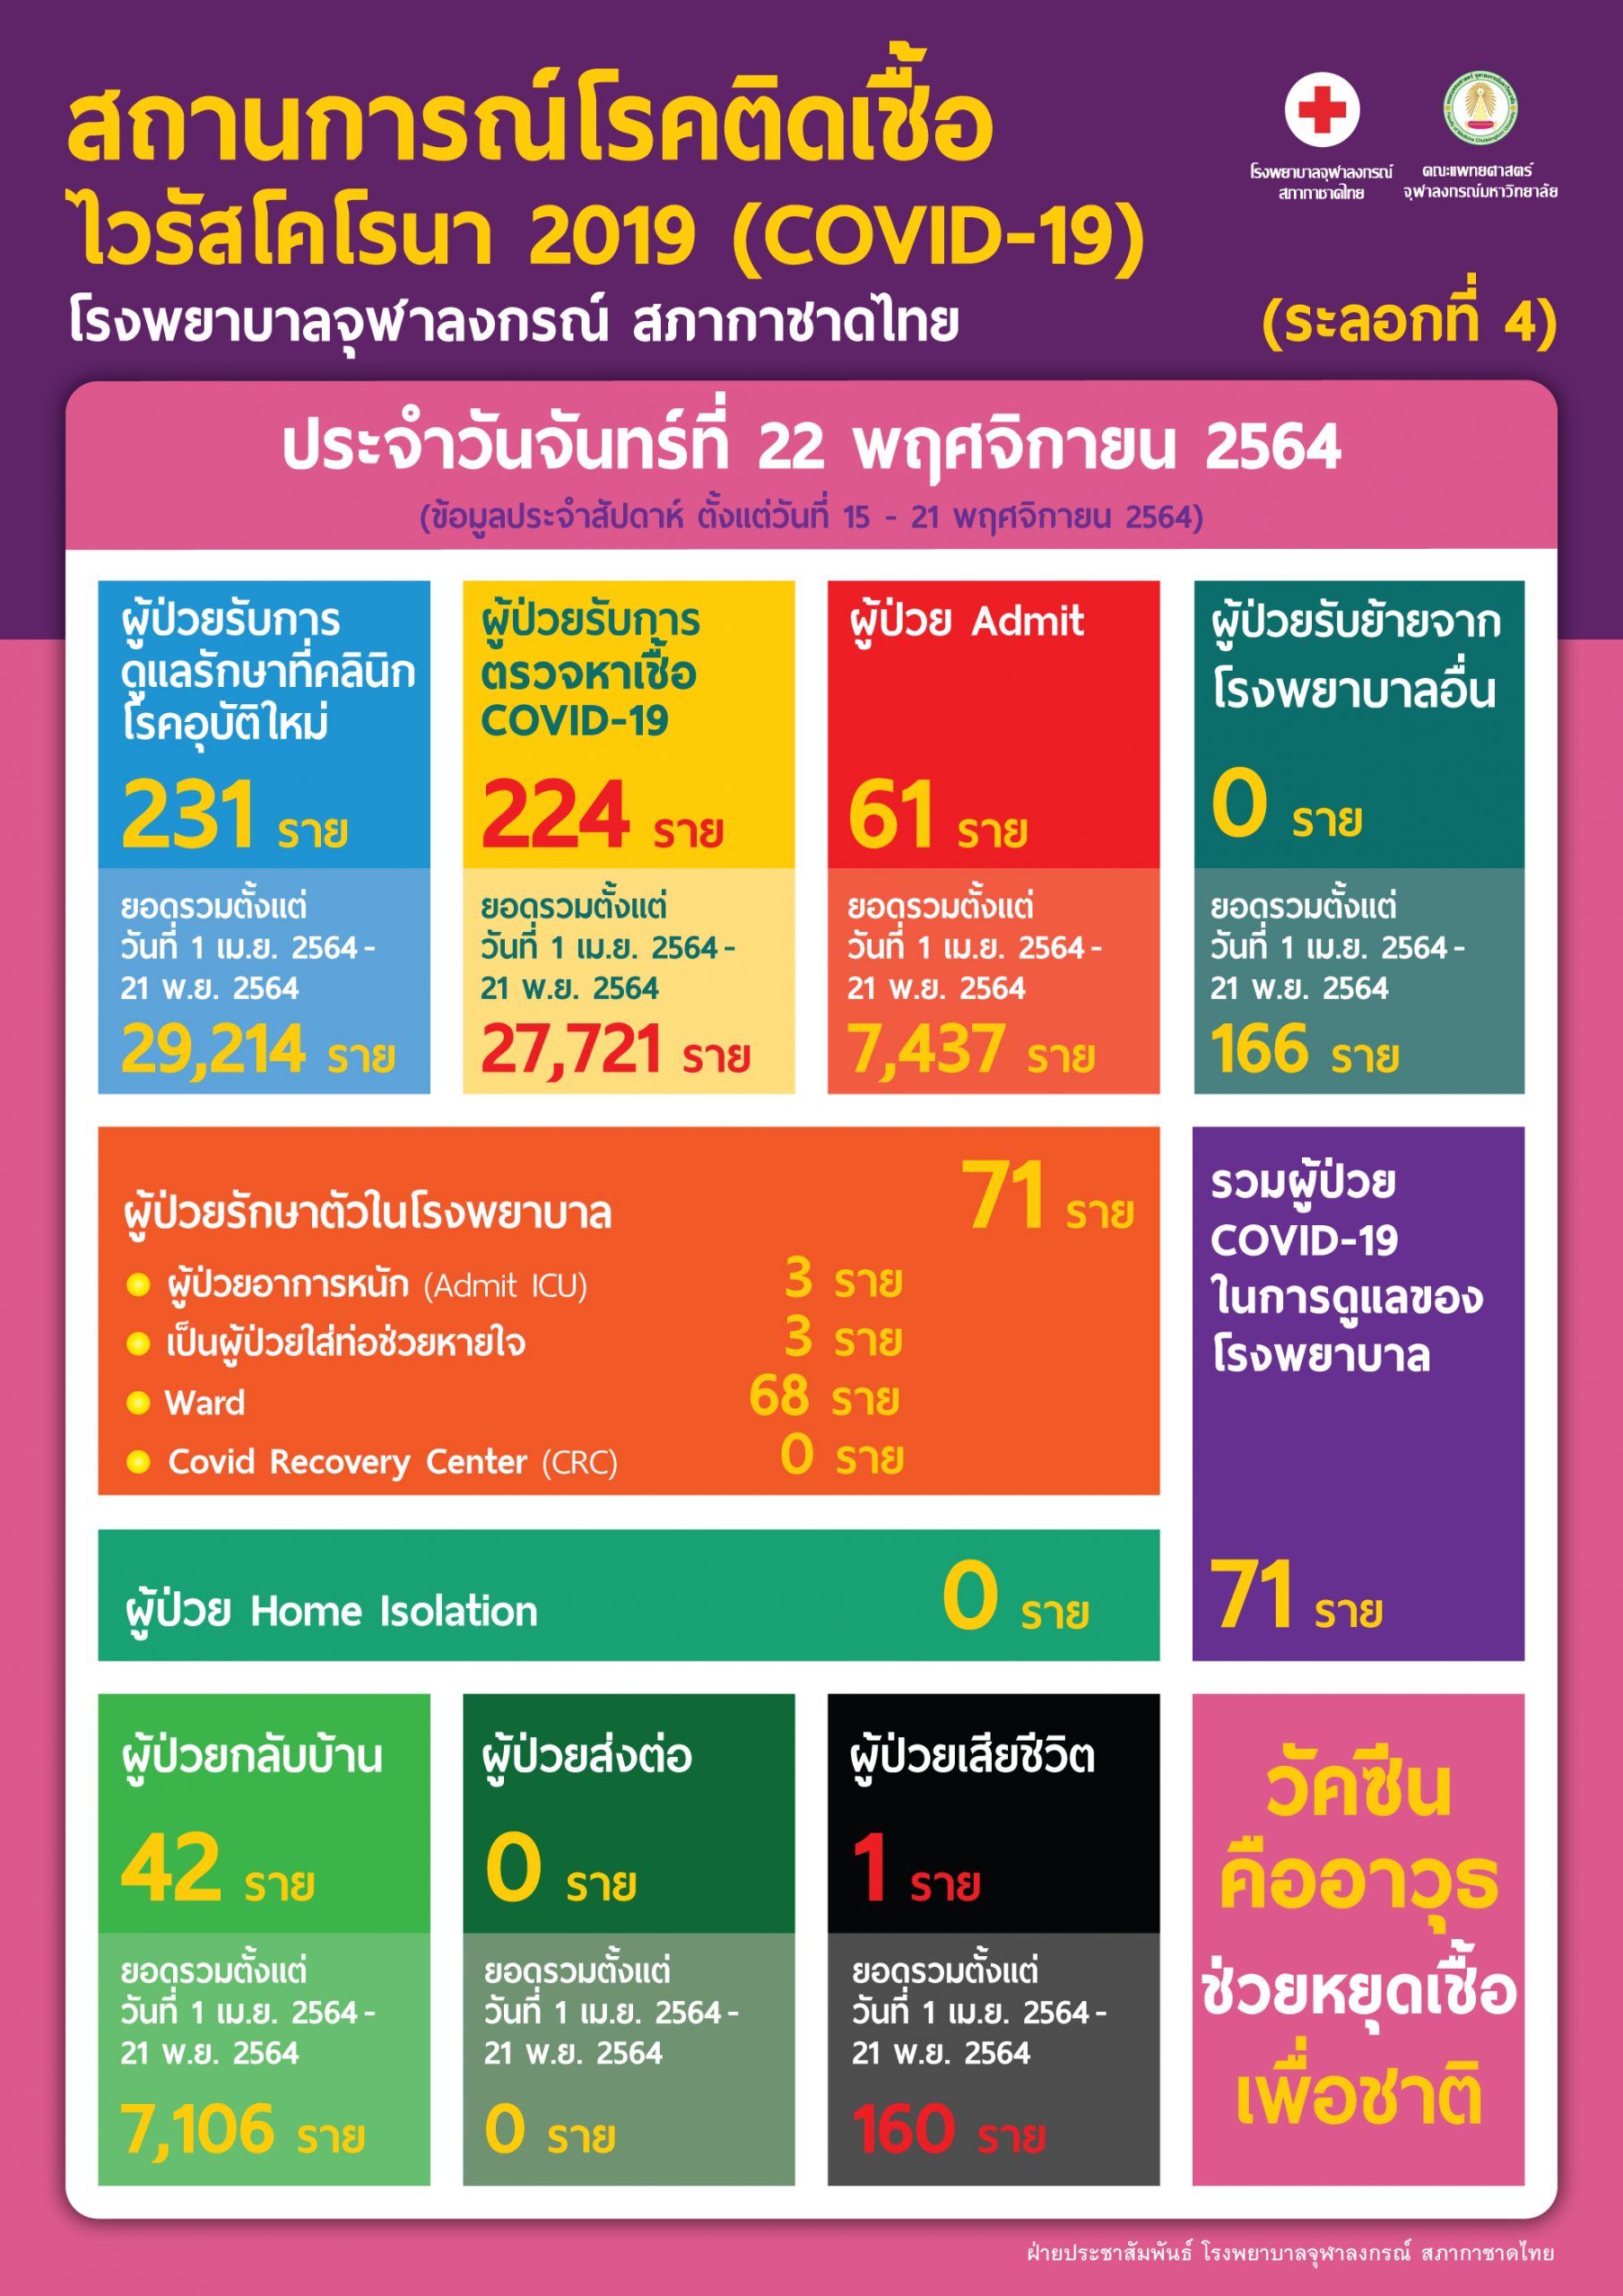 สถานการณ์โรคติดเชื้อไวรัสโคโรนา 2019 (COVID-19) (ระลอกที่ 4) โรงพยาบาลจุฬาลงกรณ์ สภากาชาดไทย ประจำวันจันทร์ที่ 22 พฤศจิกายน 2564